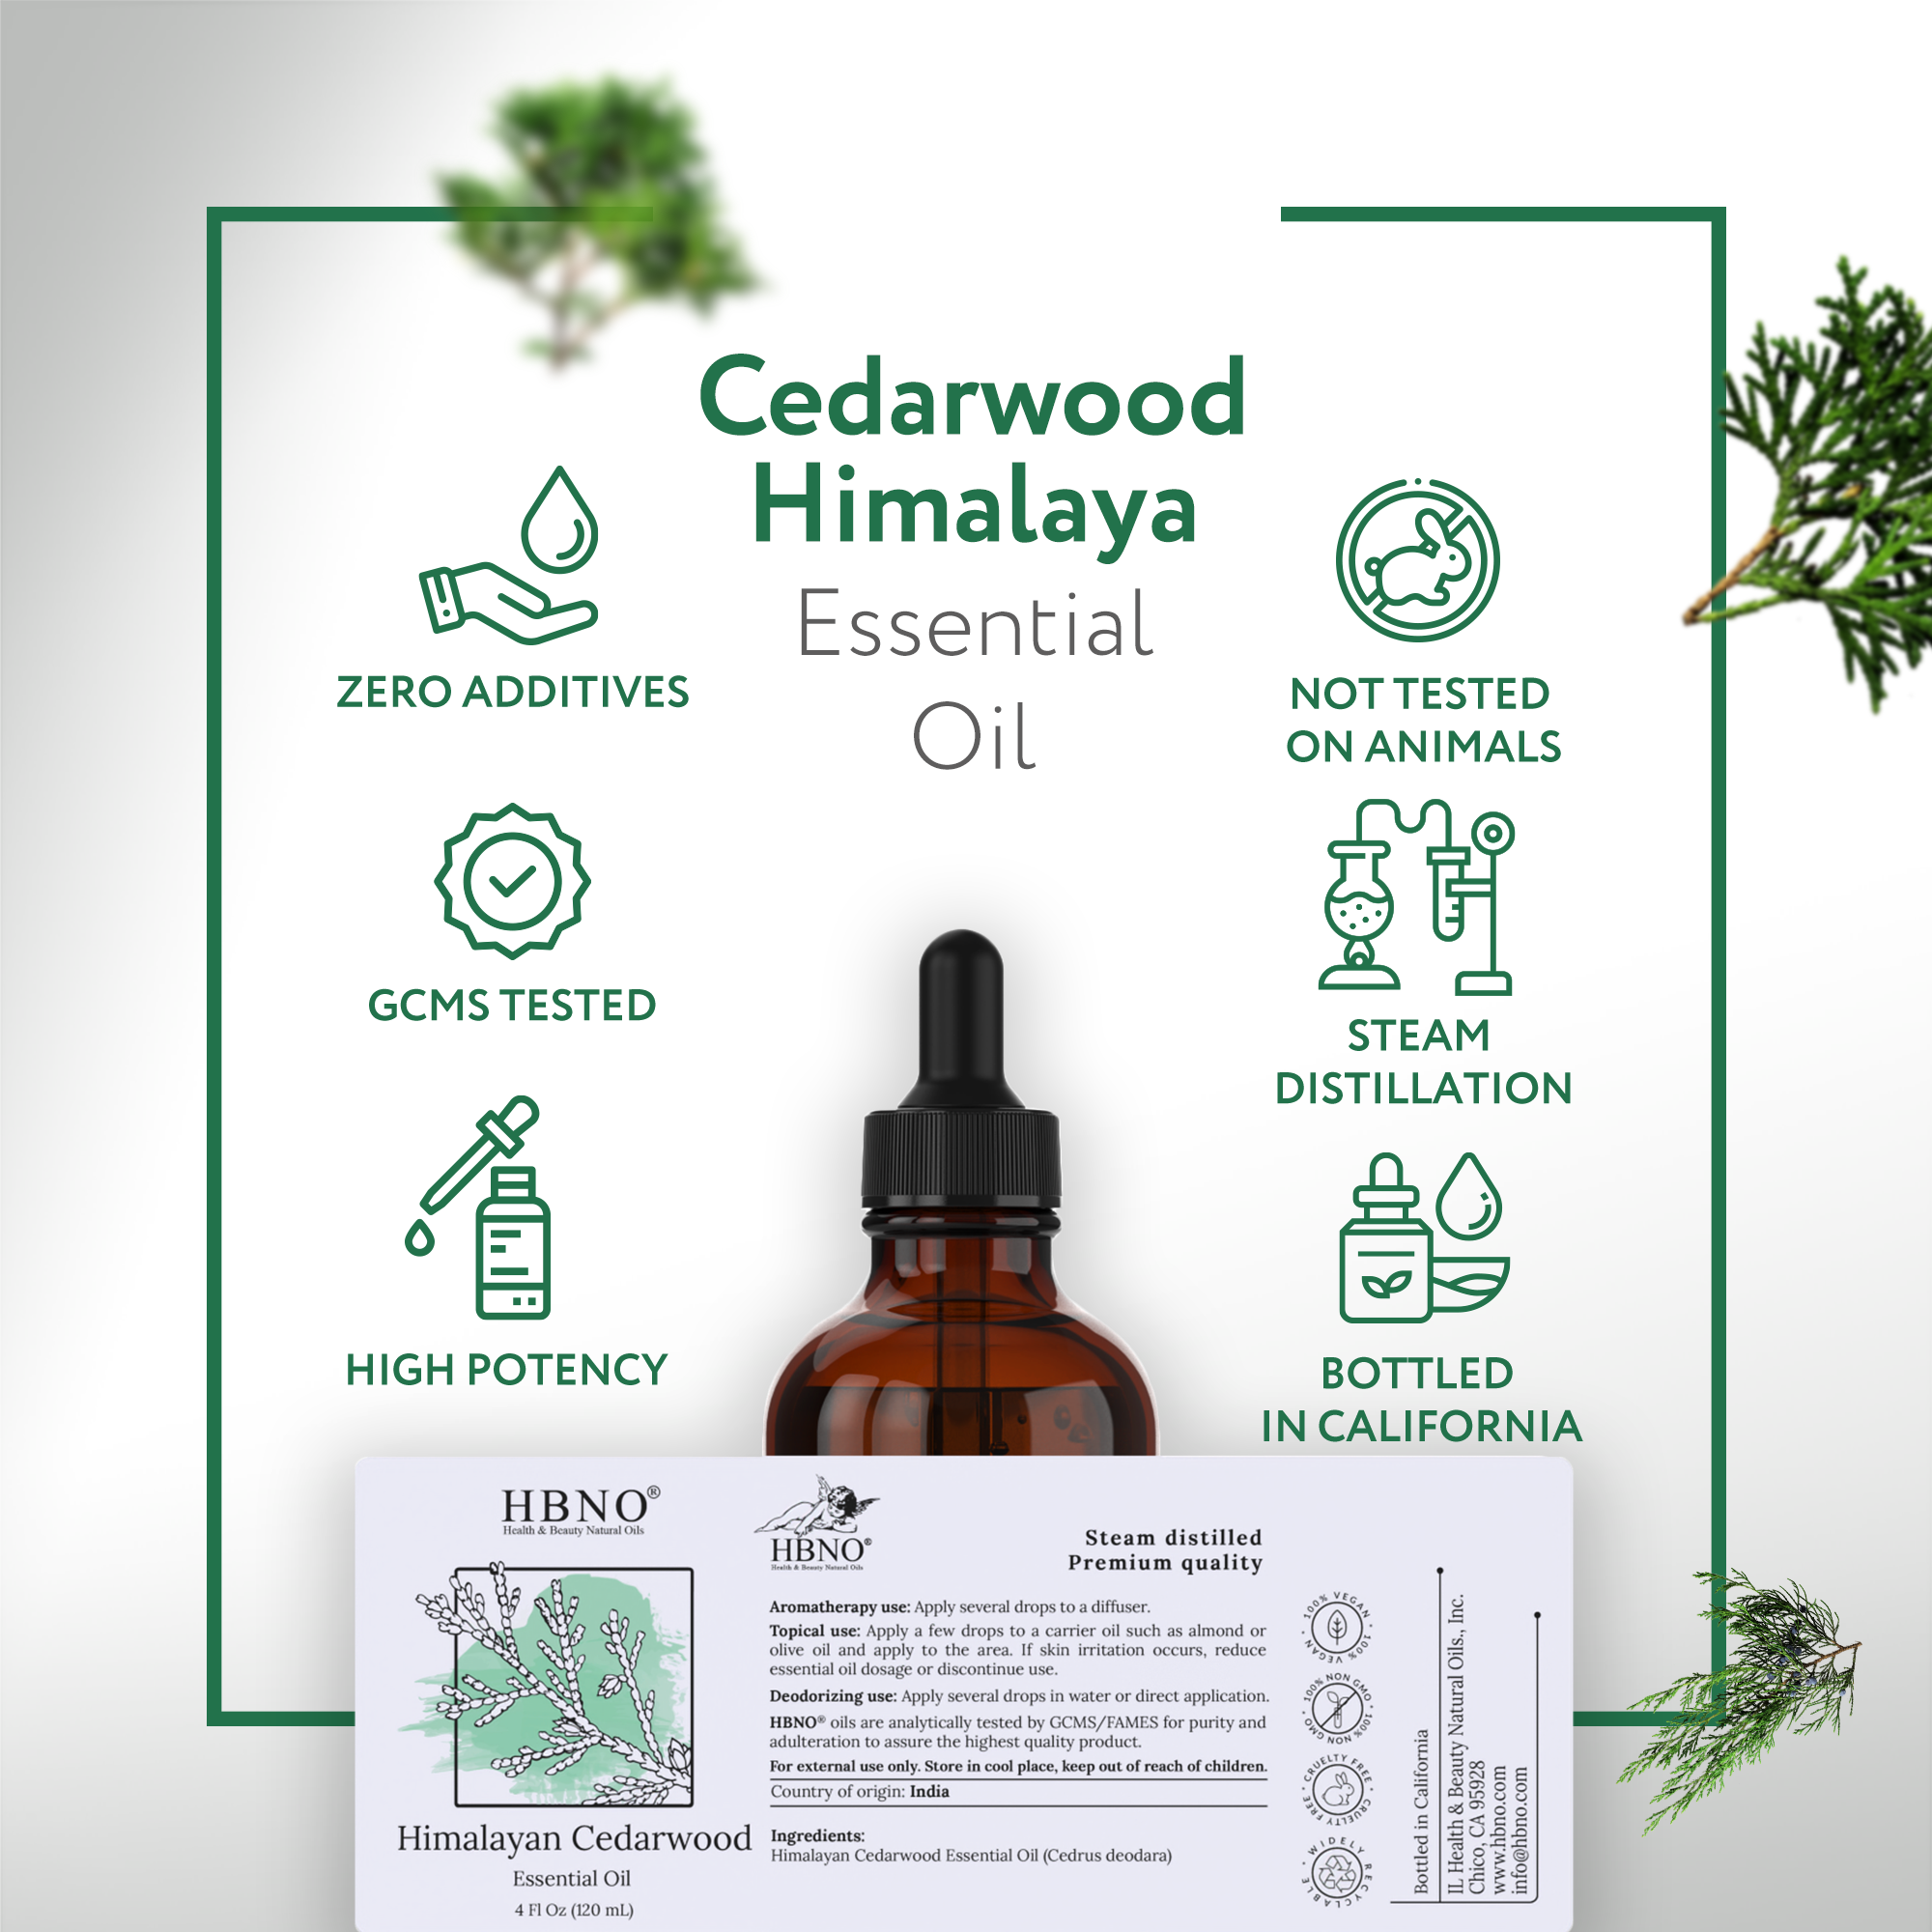 Cedarwood Himalaya Essential Oil